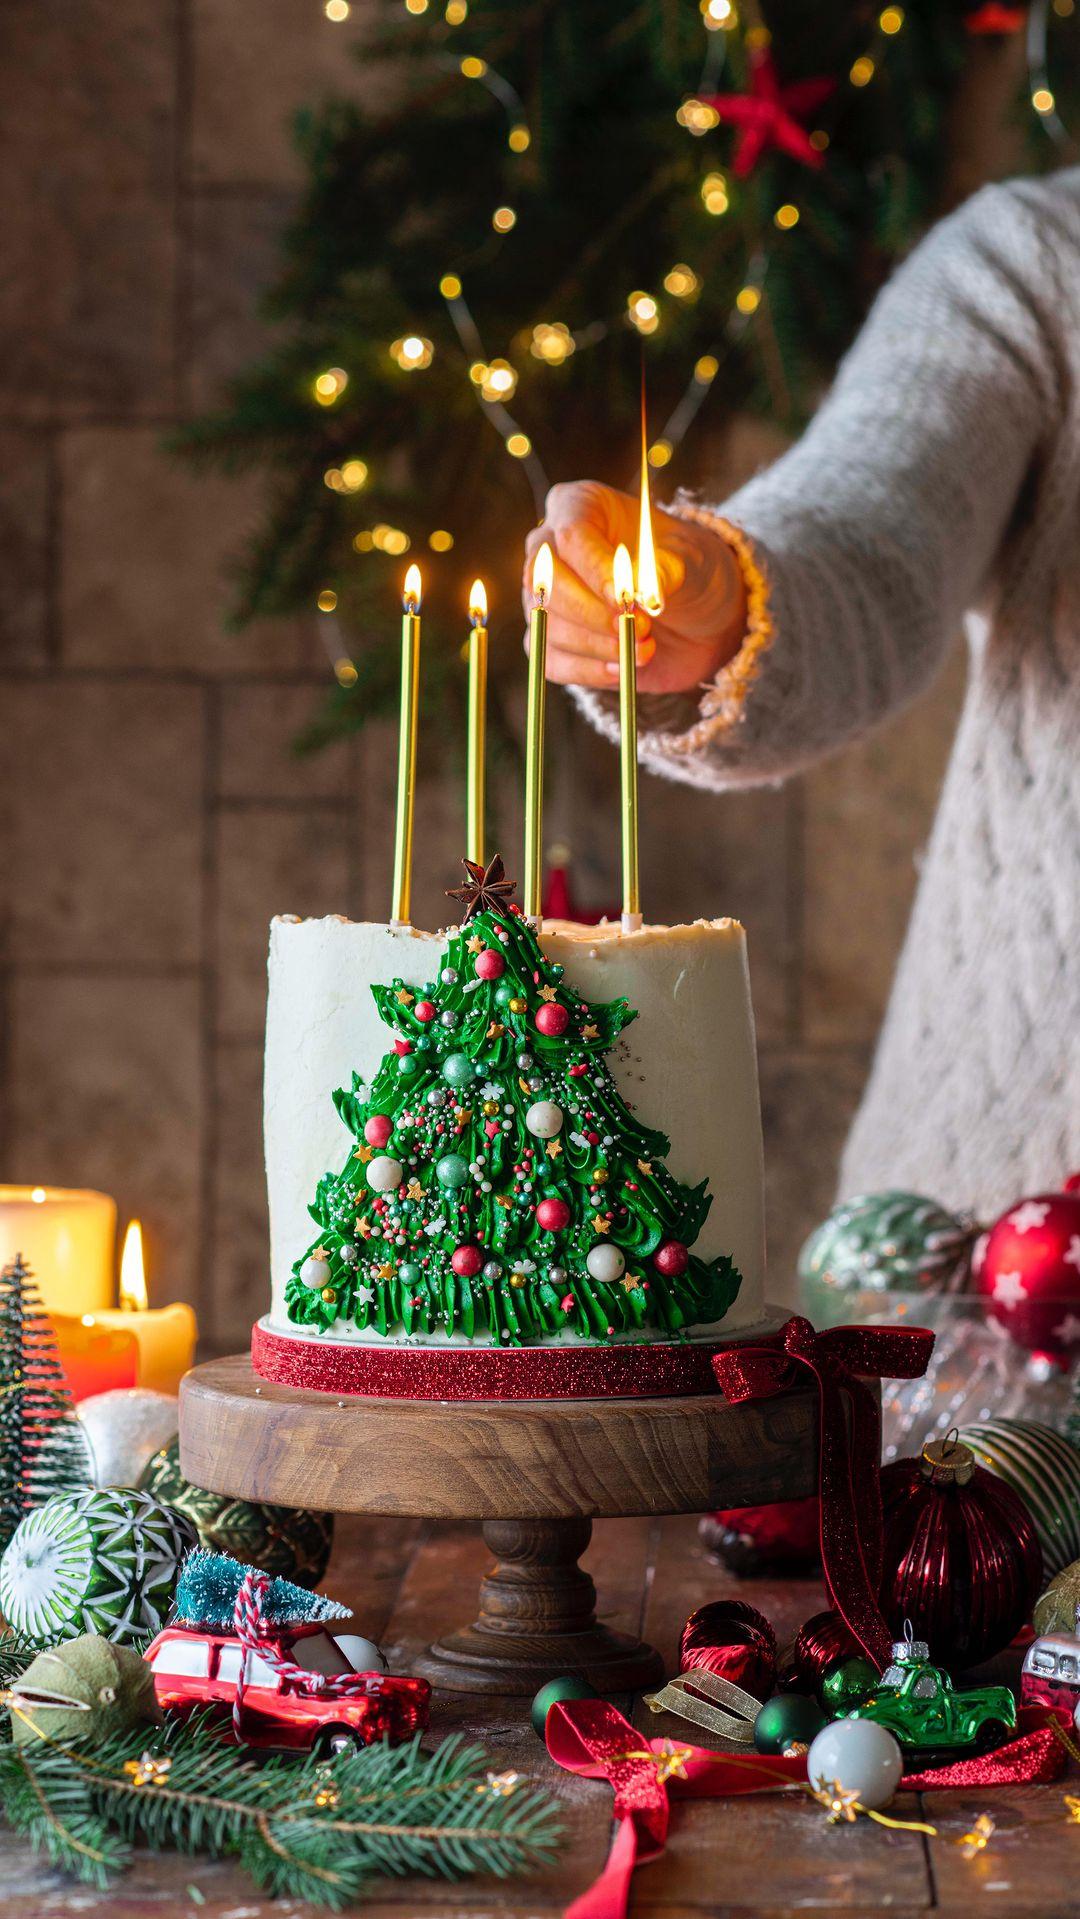 class="content__text"
 Christmas tree cake. Design inspired by @curlygirlkitchen cake🎄 
Нарядила хотя бы одну елочку, из крема. Настоящую пока еще не купили, но собираемся на днях ✨Вы уже поставили елочку?

 #фудблог #фудблогер #фудфотограф #фудфото #фудфотография #новыйгод #рождество #торт #выпечка #hautecuisines #christmas #christmasdecor #christmastree #christmasdecorations #cake #foodphotography #foodstyling #foodphotographyandstyling #foodie #foodblog #foodblogger #instafood 
 